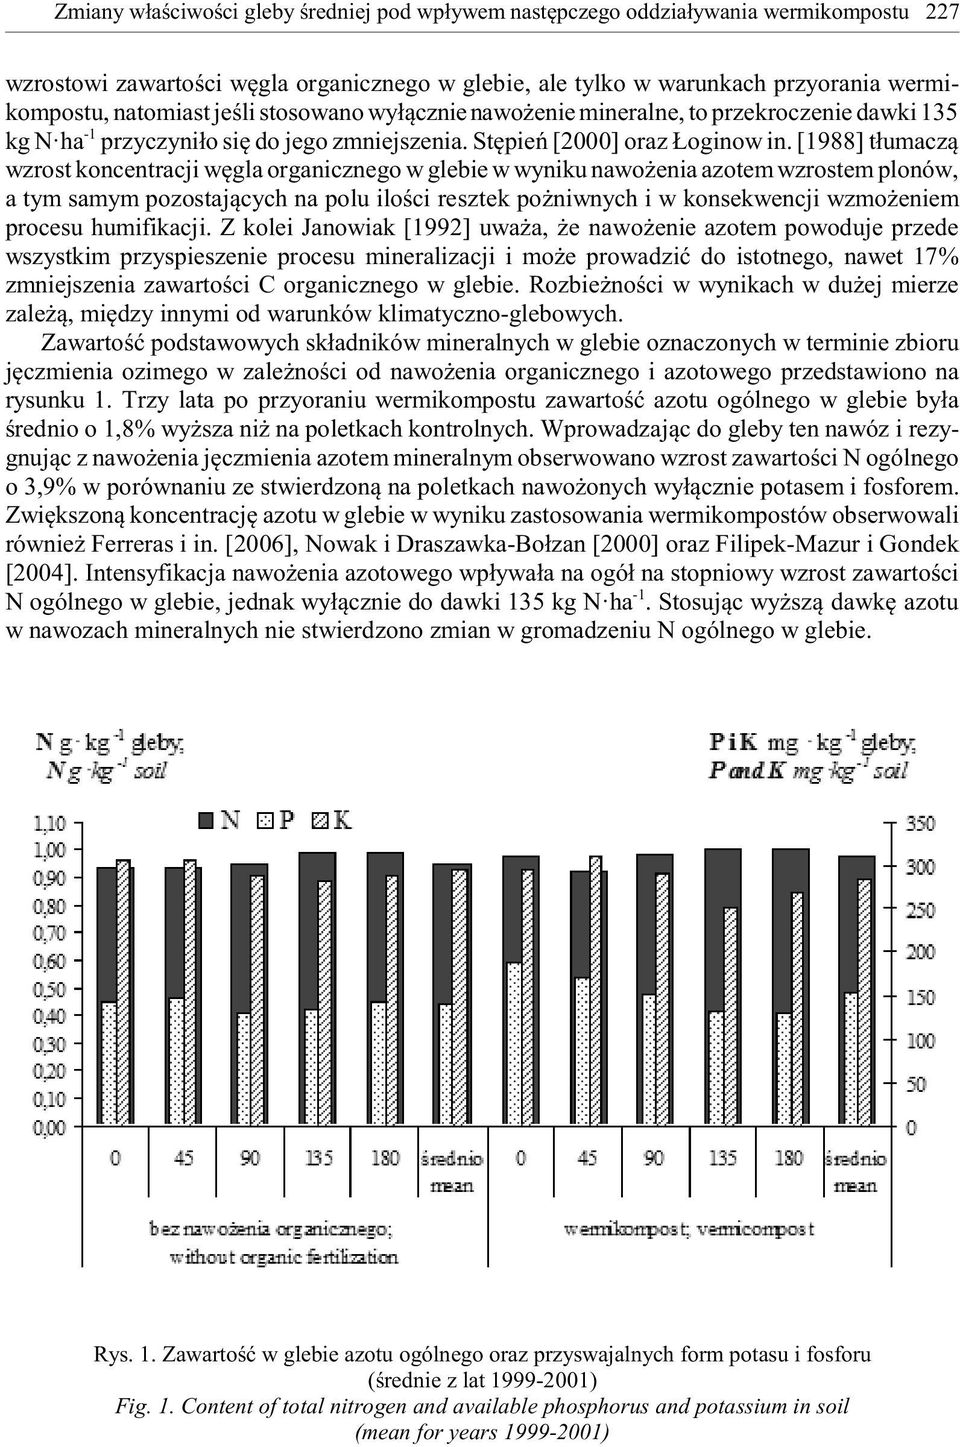 [1988] t³umacz¹ wzrost koncentracji wêgla organicznego w glebie w wyniku nawo enia azotem wzrostem plonów, a tym samym pozostaj¹cych na polu iloœci resztek po niwnych i w konsekwencji wzmo eniem